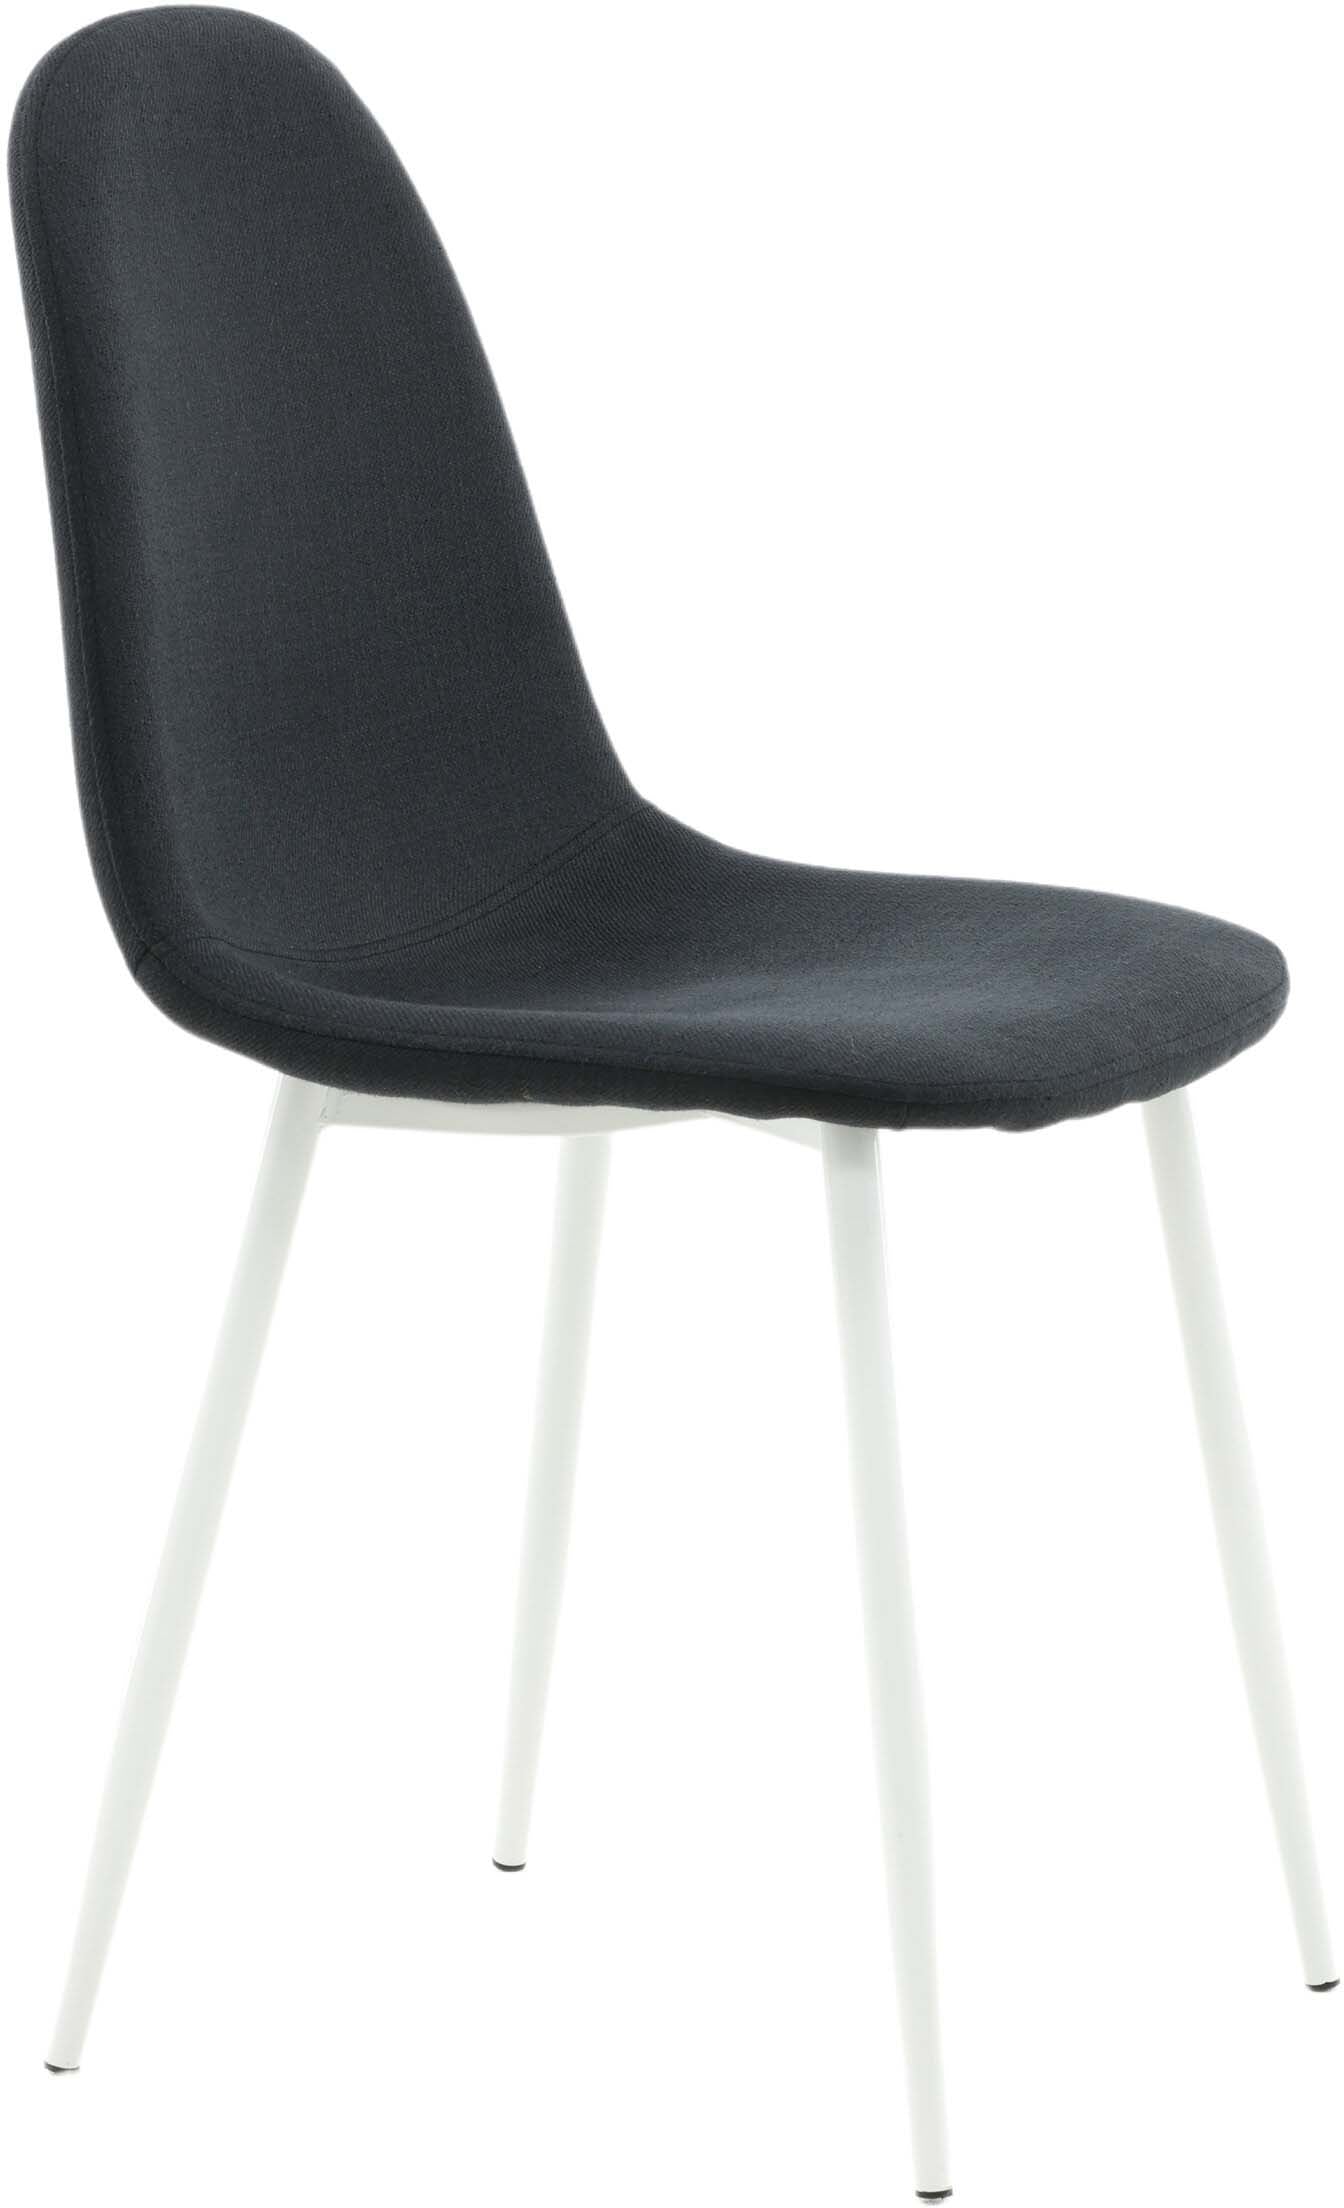 Polar Stuhl in Schwarz/Weiss präsentiert im Onlineshop von KAQTU Design AG. Stuhl ist von Venture Home